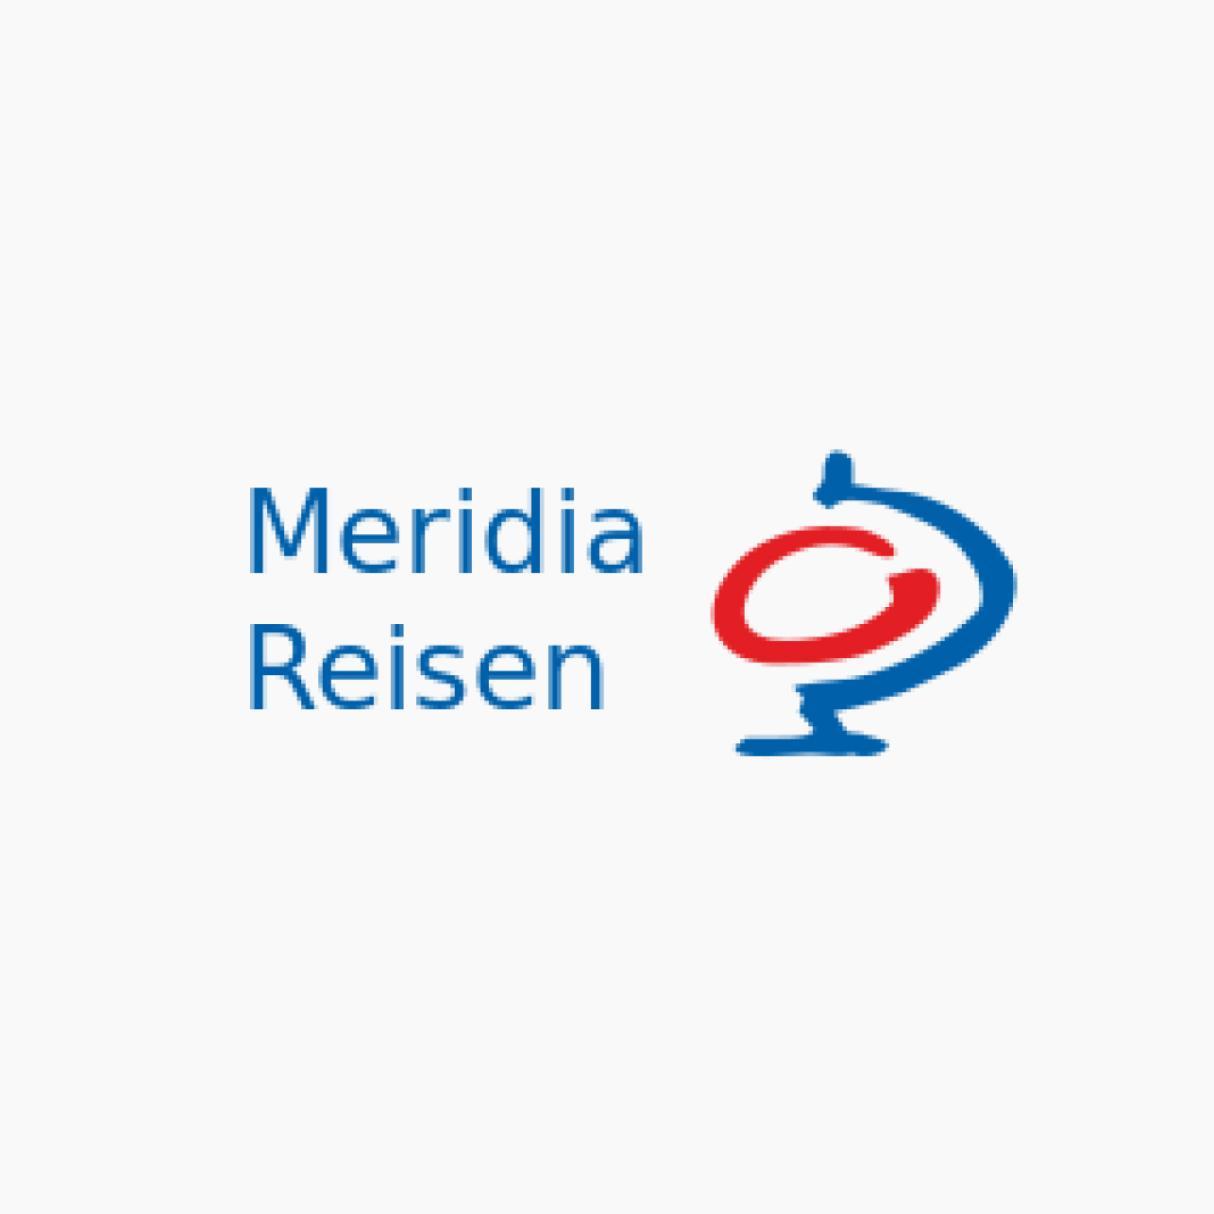 Meridia Reisen logo